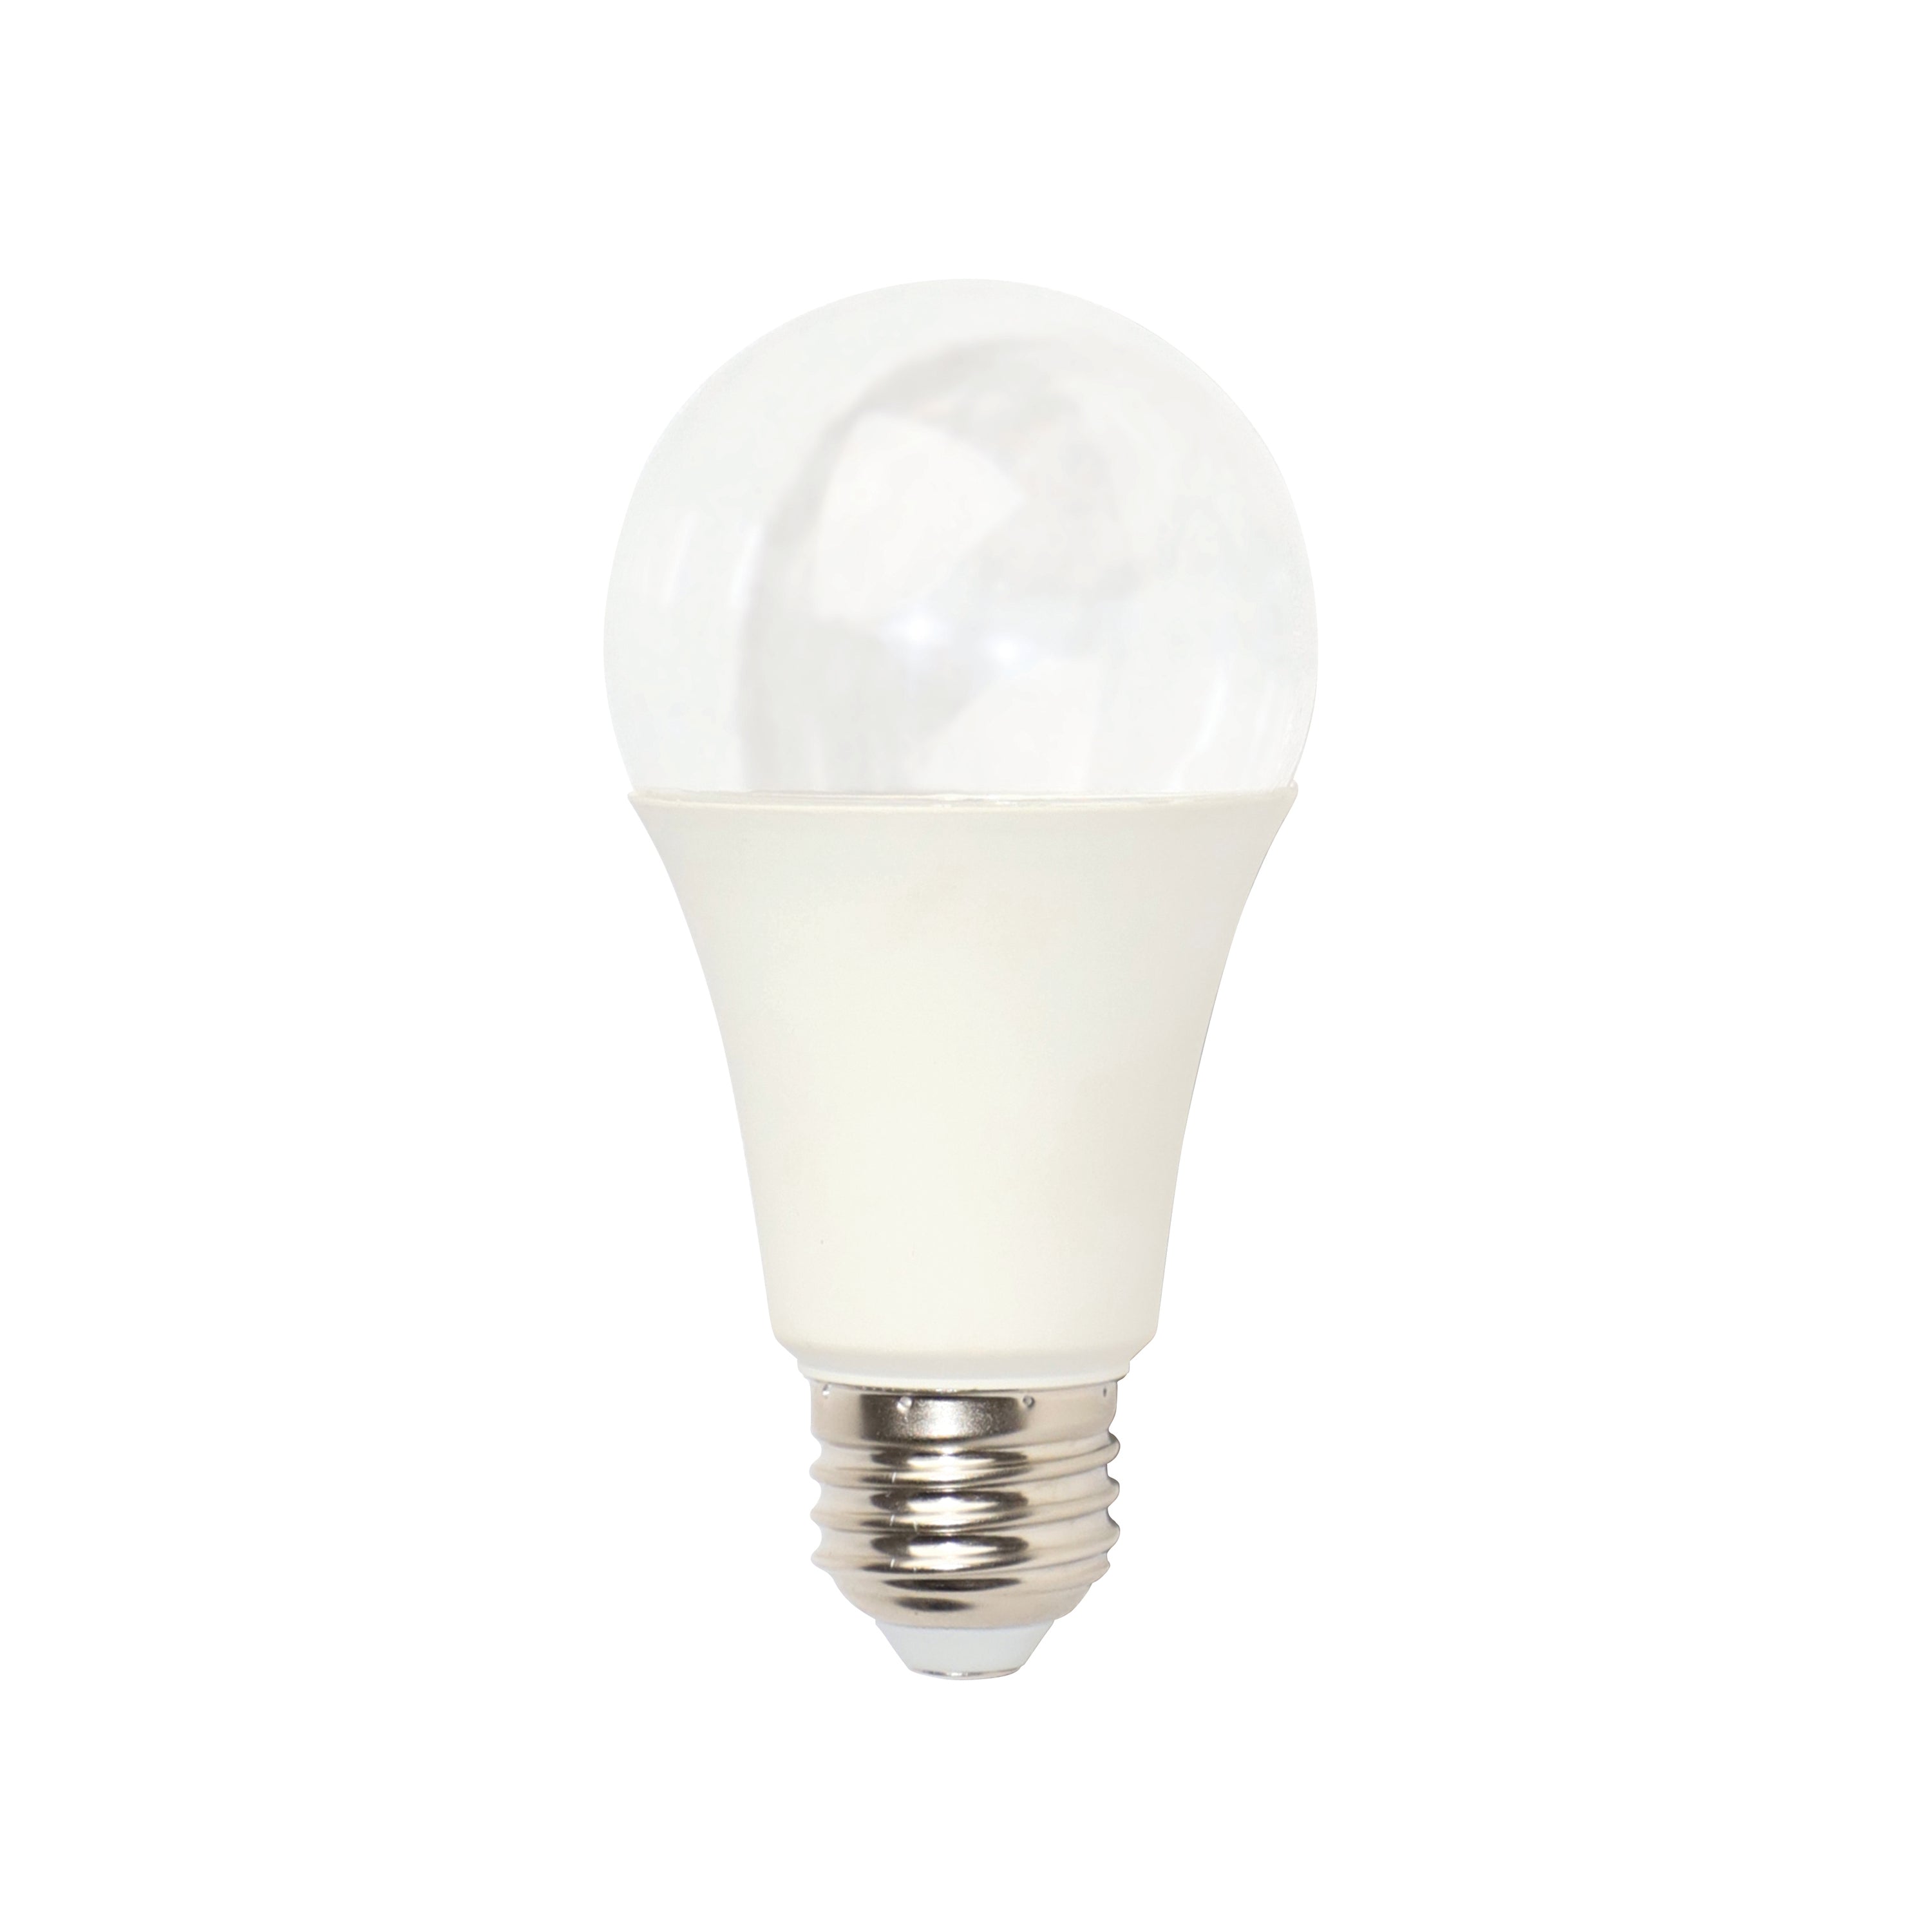 13.09 PPF 9-Watt LED Grow Bulb, Full Spectrum, E26